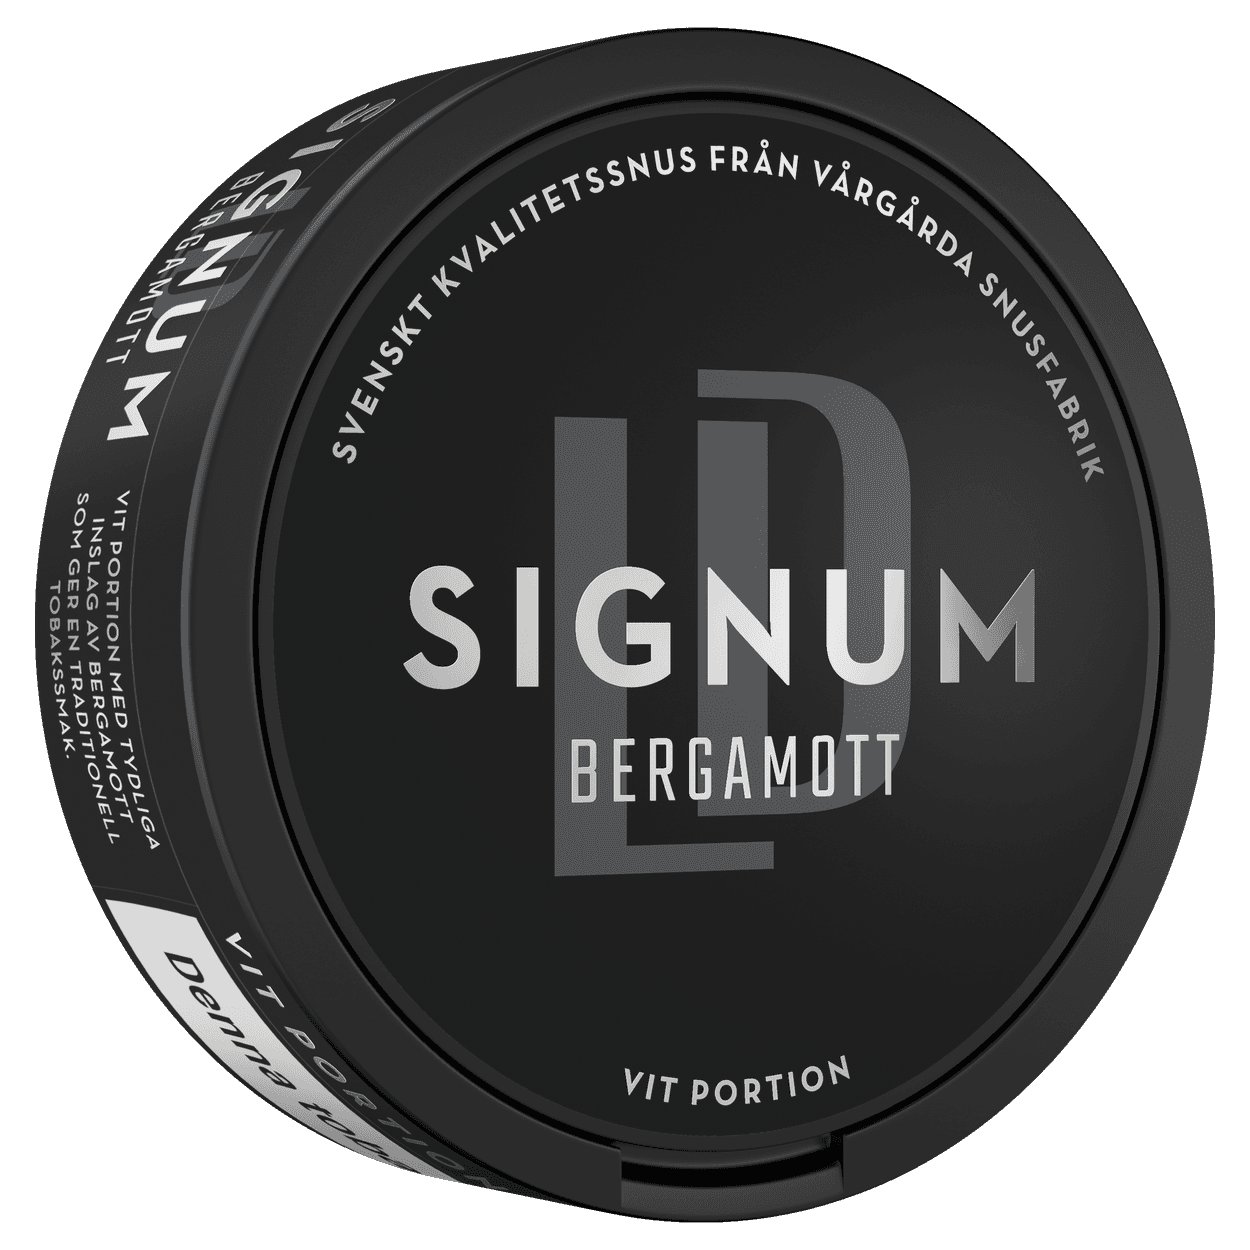 LD Signum Bergamott Vit - Nordic Snus